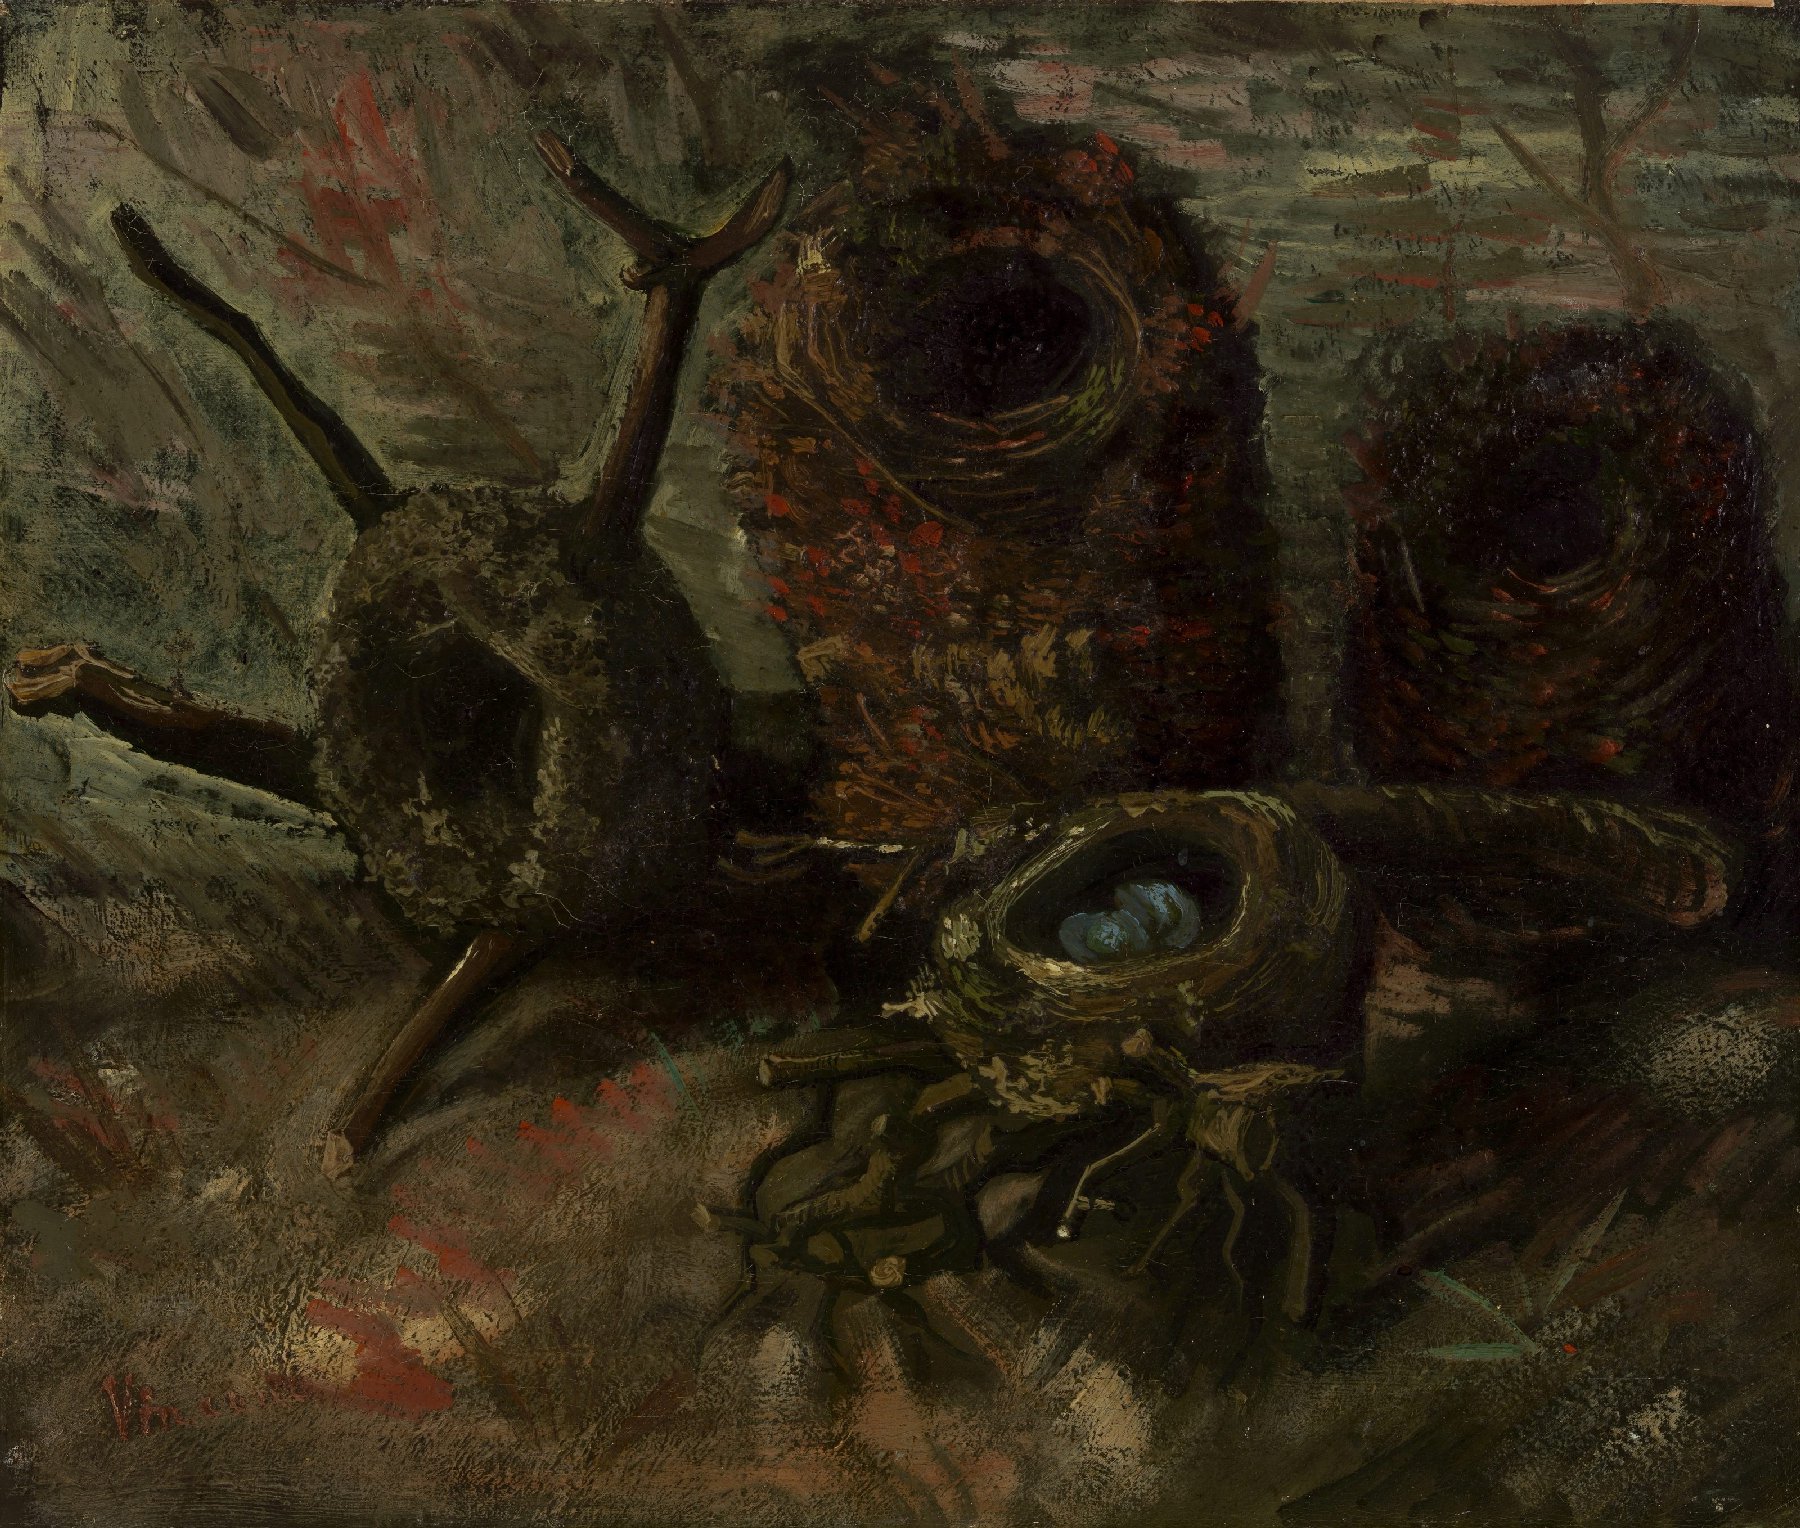 Vogelnesten Vincent van Gogh (1853 - 1890), Nuenen, september-oktober 1885